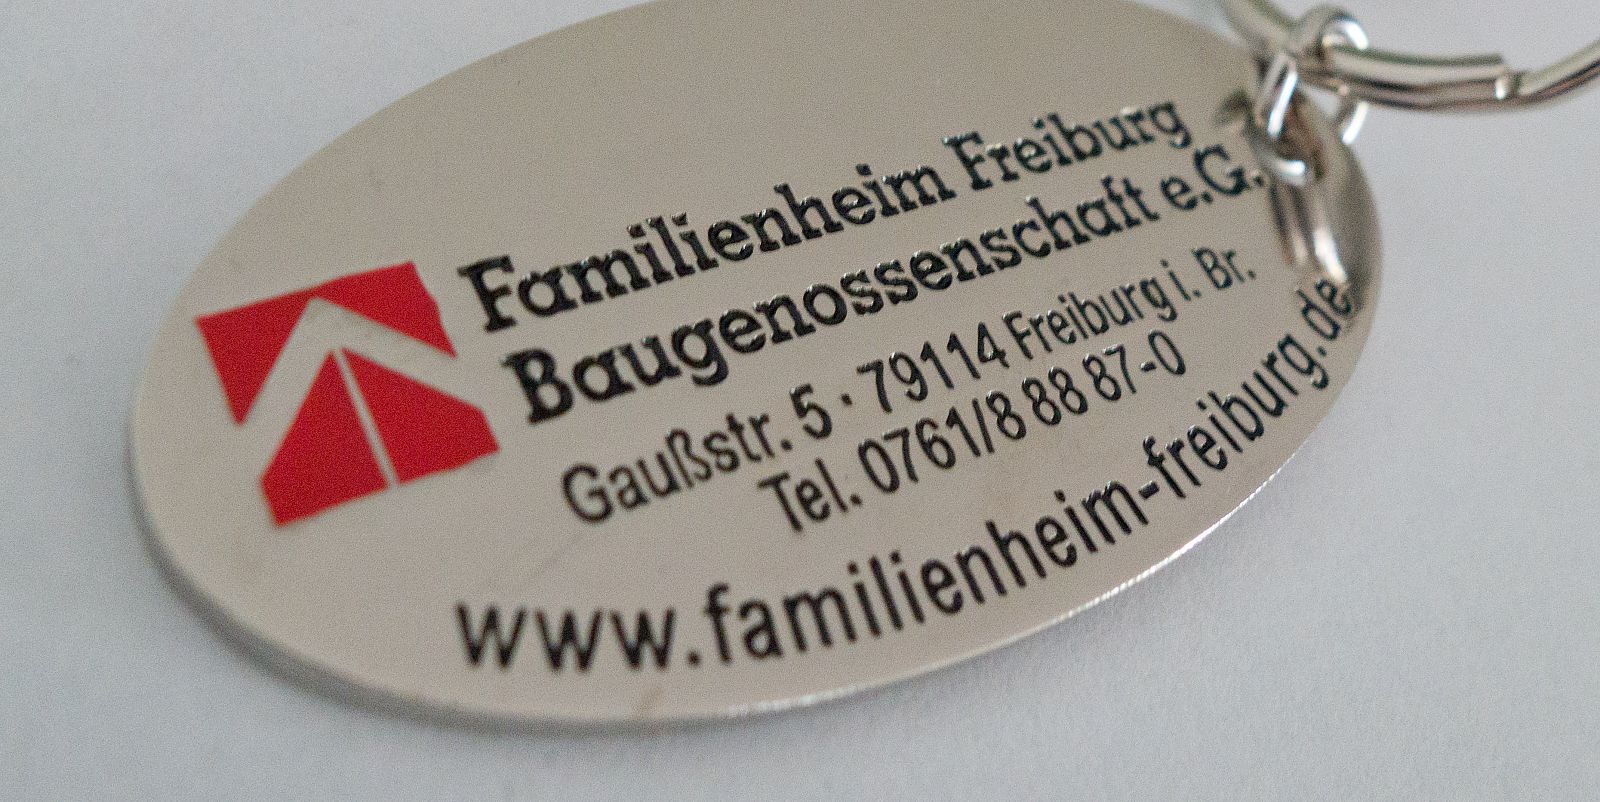 Familienheim Freiburg Kopfgrafik